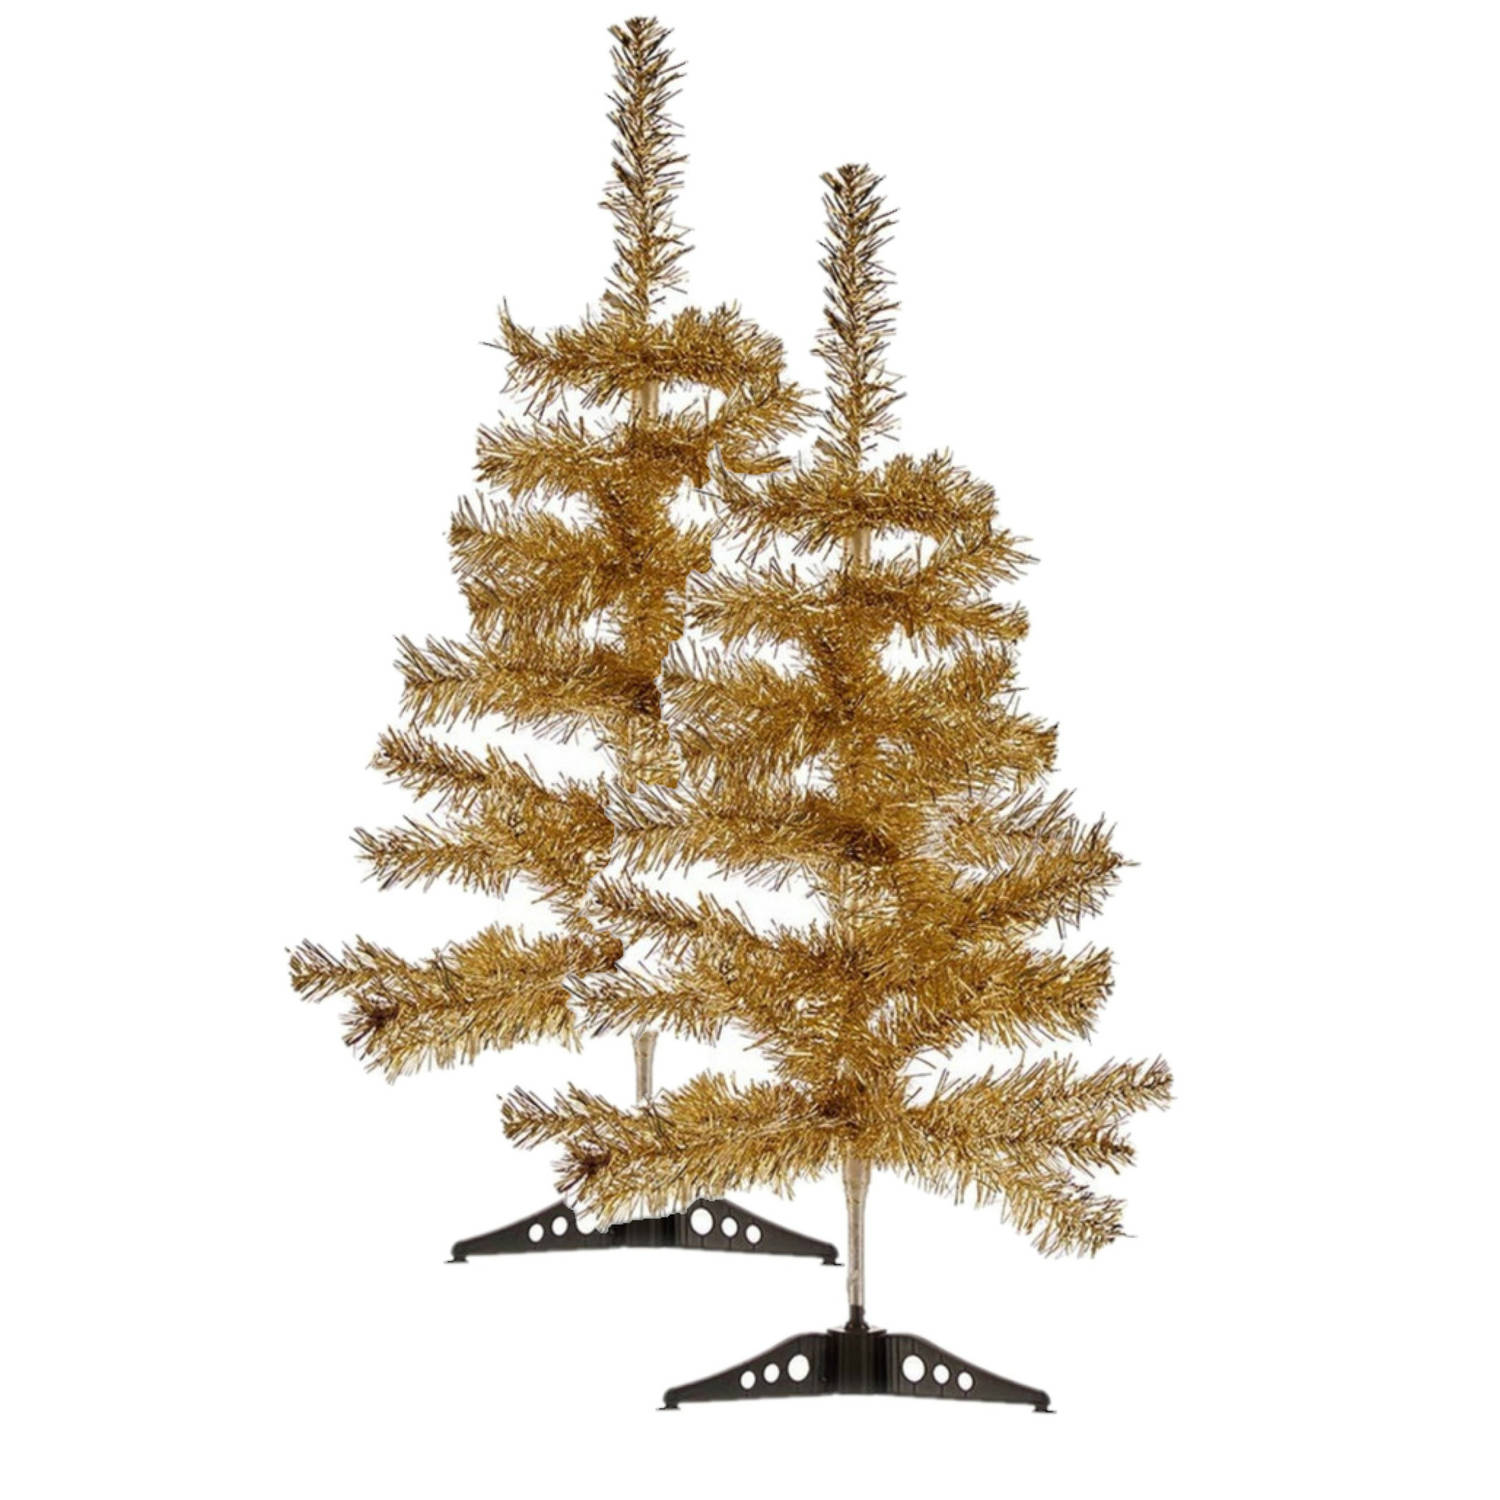 2x stuks kleine glitter bronzen kerstbomen van 60 cm - Kunstkerstboom